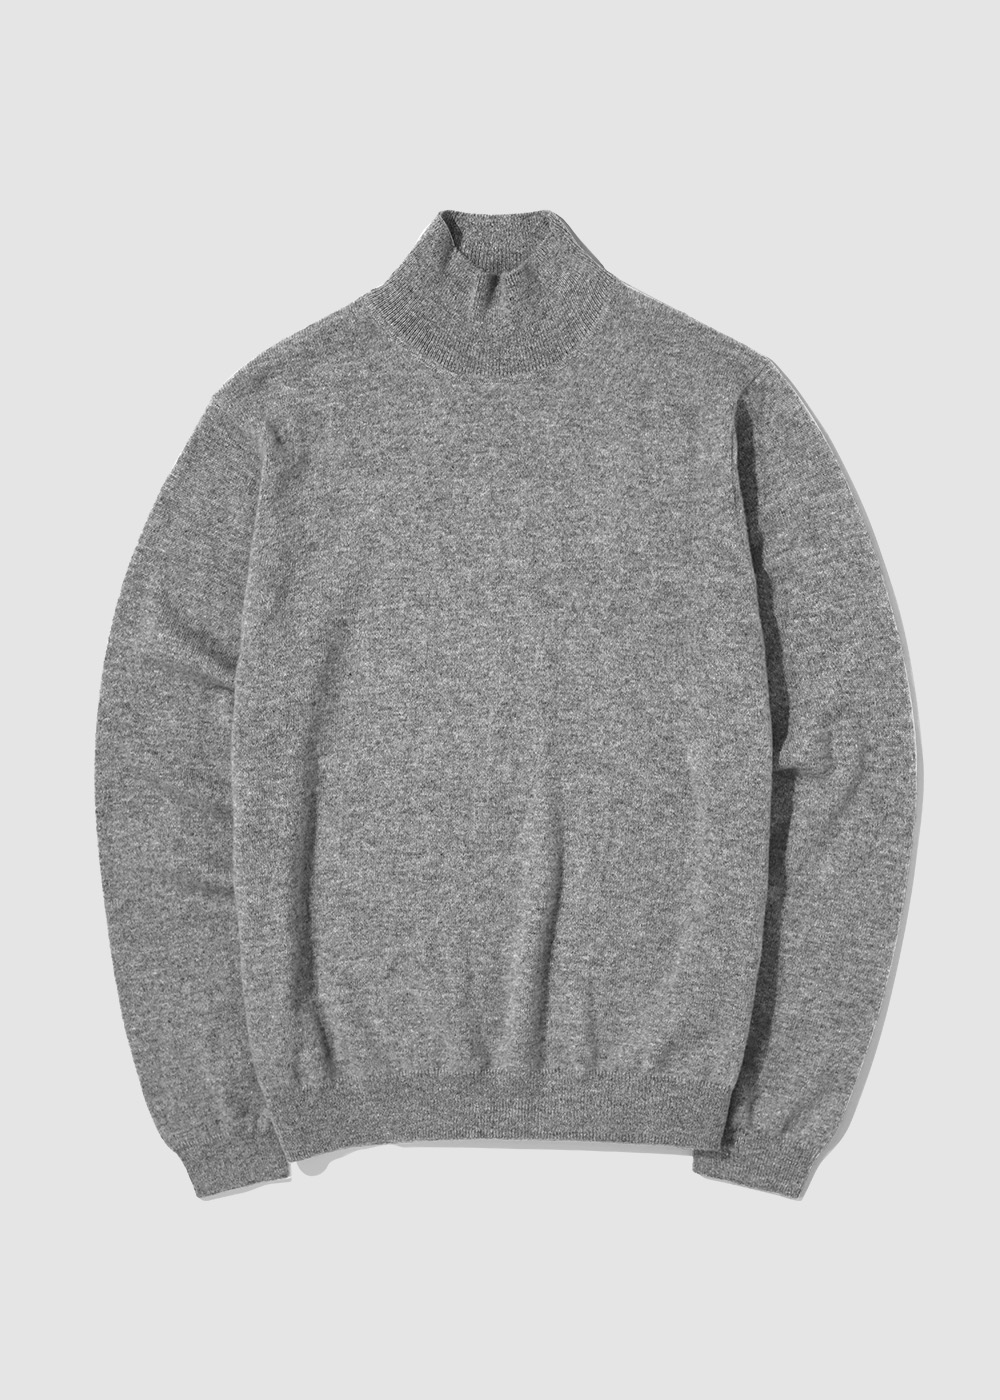 Cashmere 10% Blended Mockneck Knit _ gray